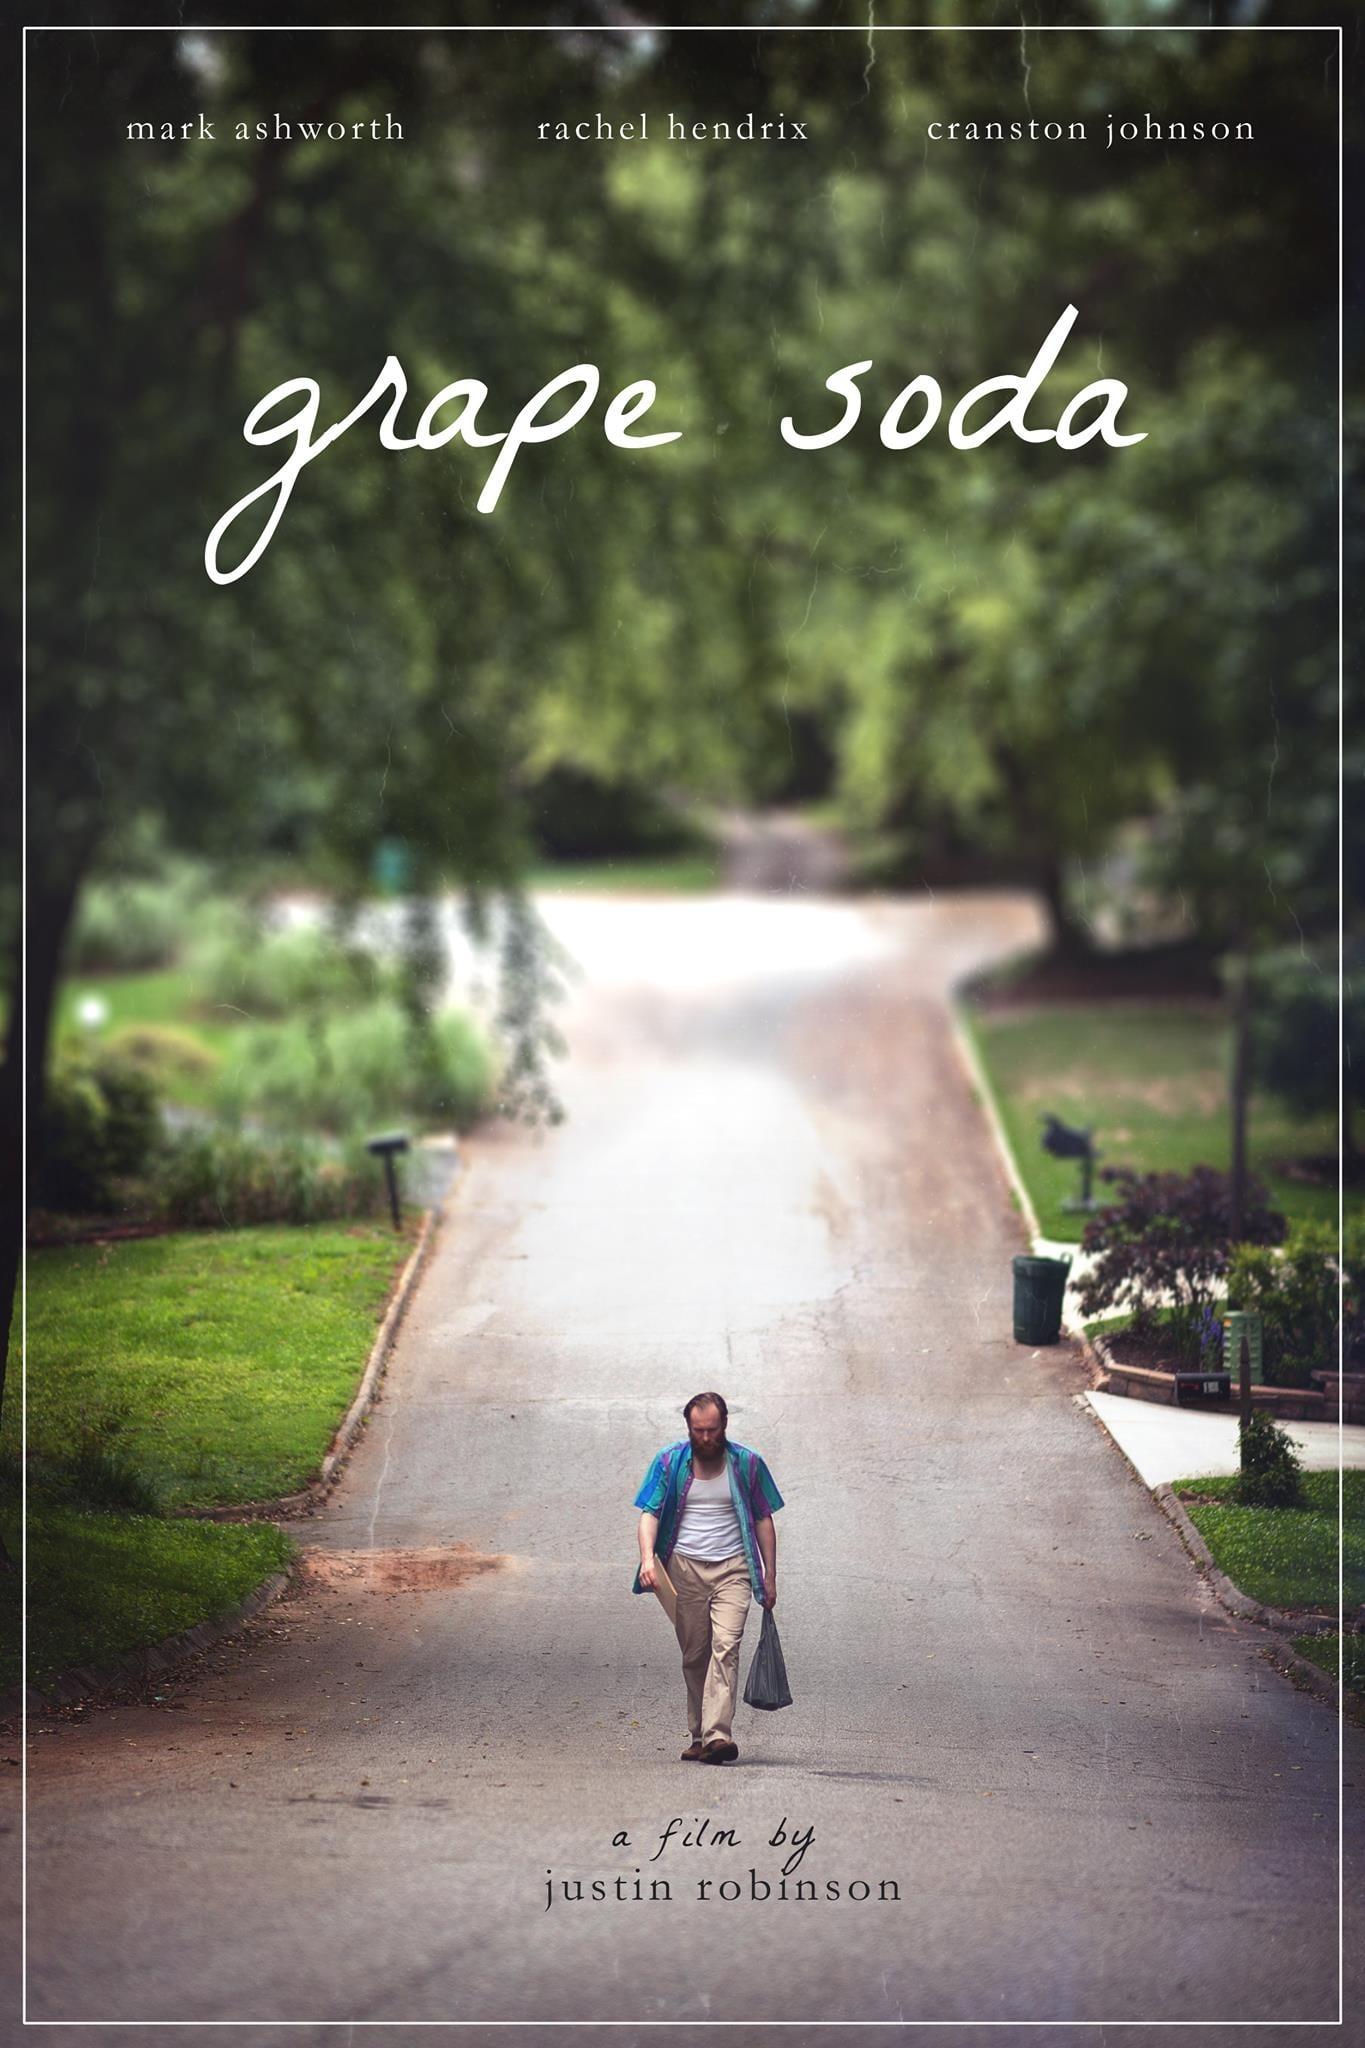 Grape Soda poster